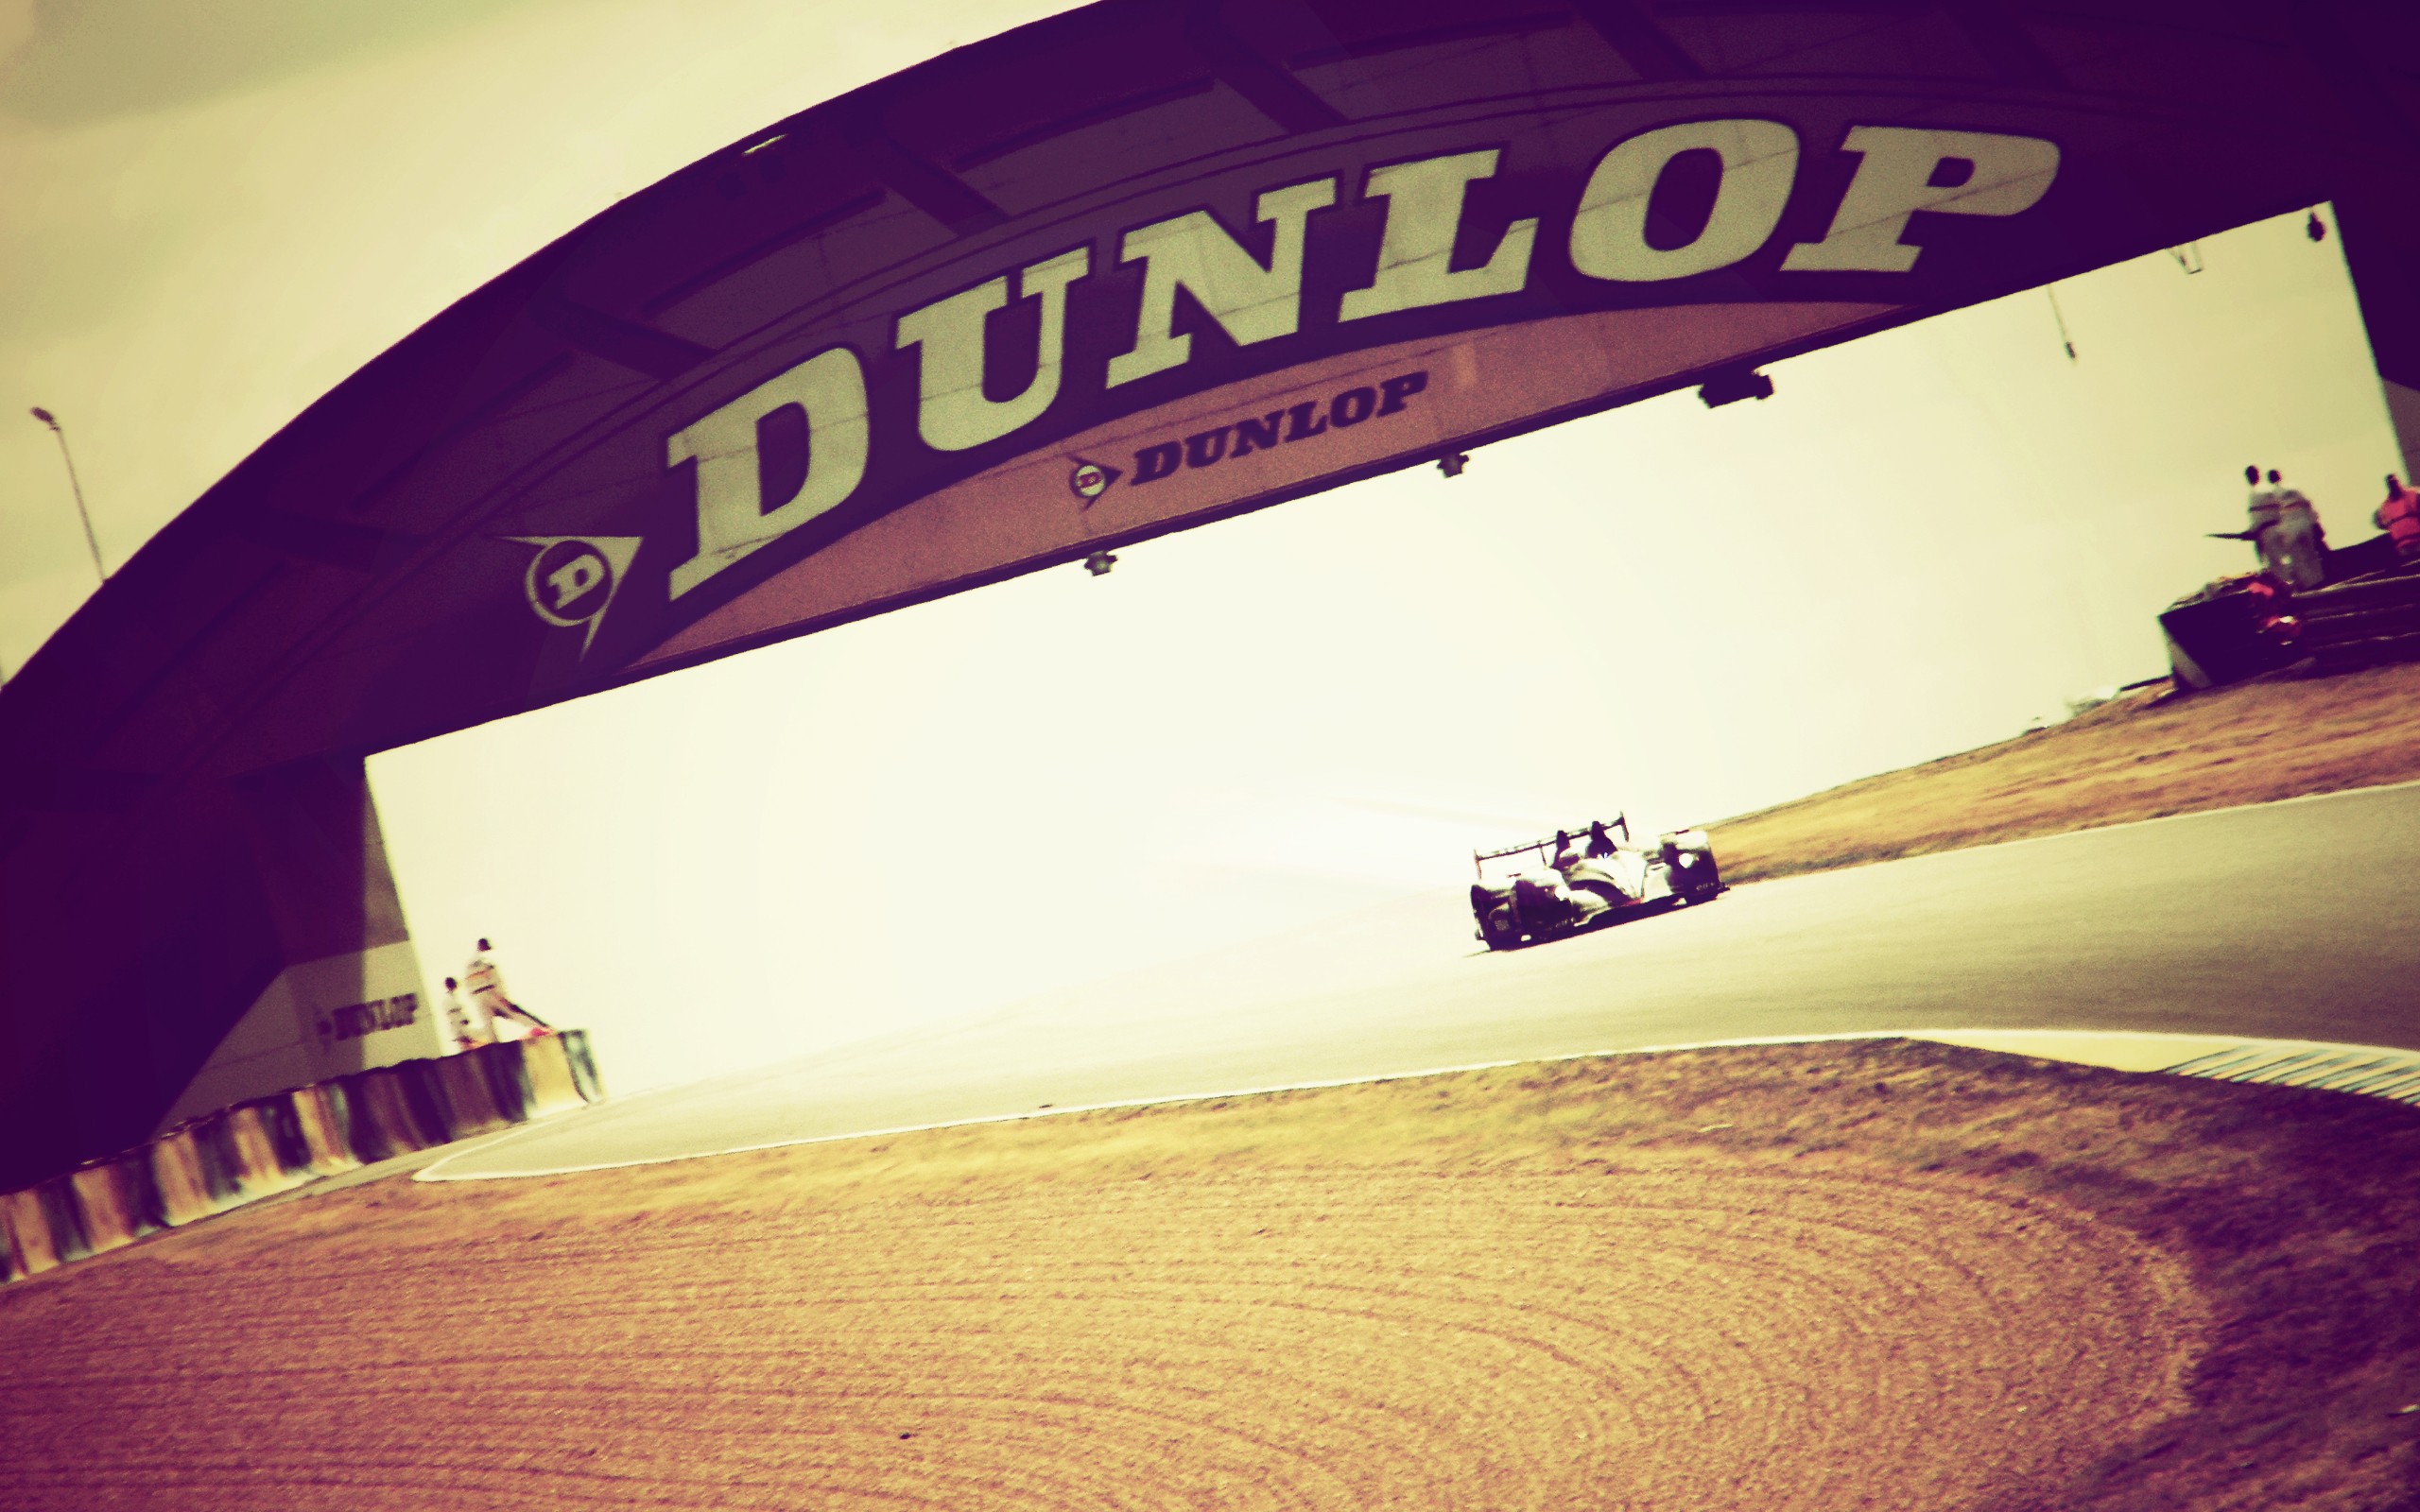 The Dunlop Le Mans Wallpaper iPhone